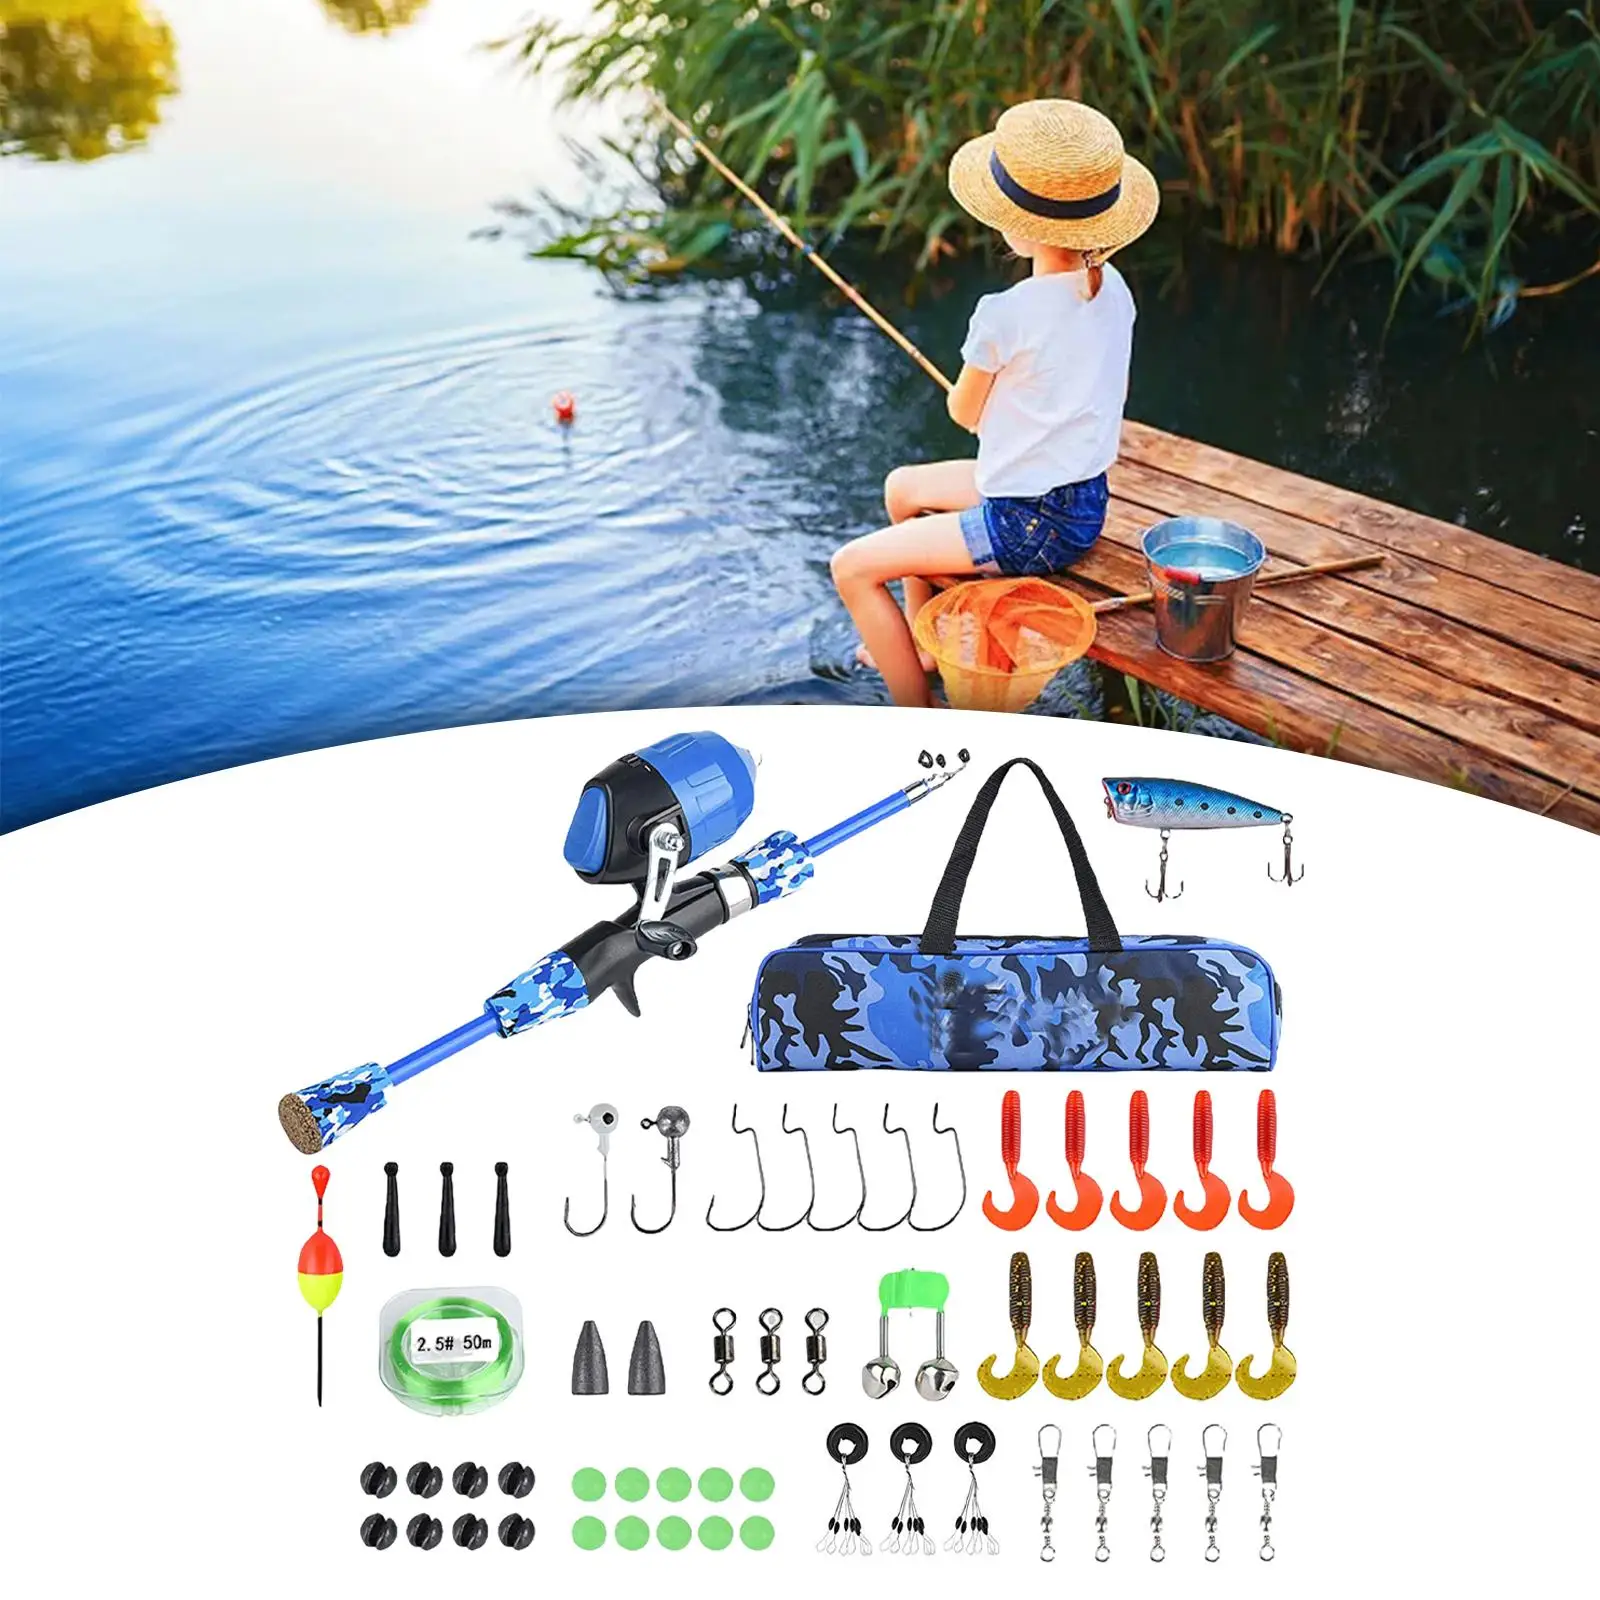 Kids Fishing Rod Set Gift Fishing Equipment Set for Travel Camping Beginner